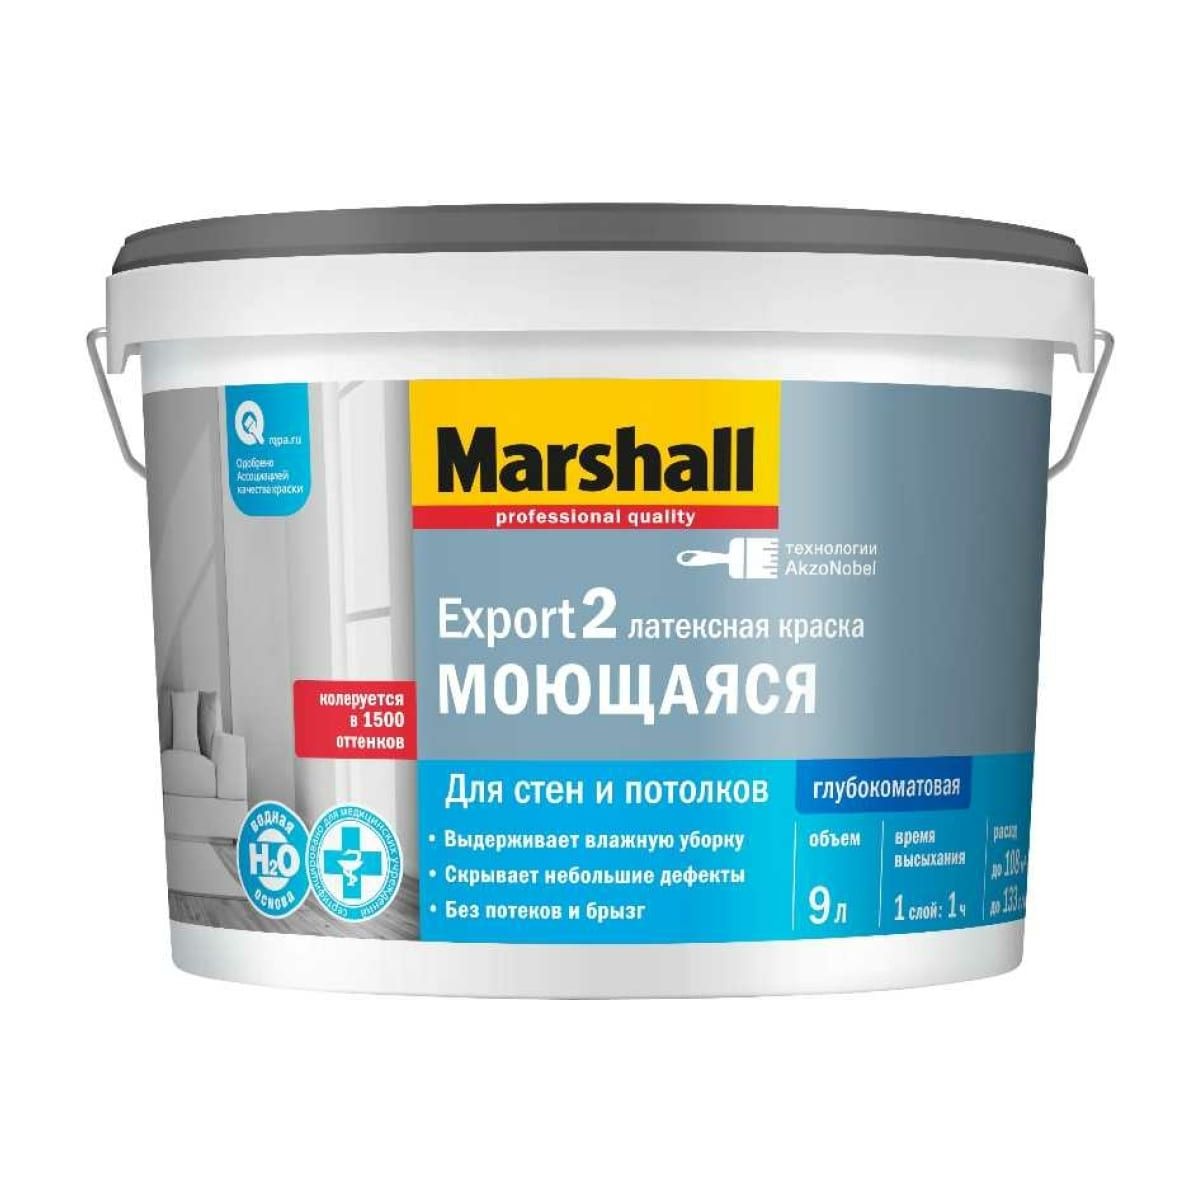 Краска Marshall Export 2 латексная, глубокоматовая, база BW, 9 л краска marshall export 2 латексная глубокоматовая база bw 900 мл